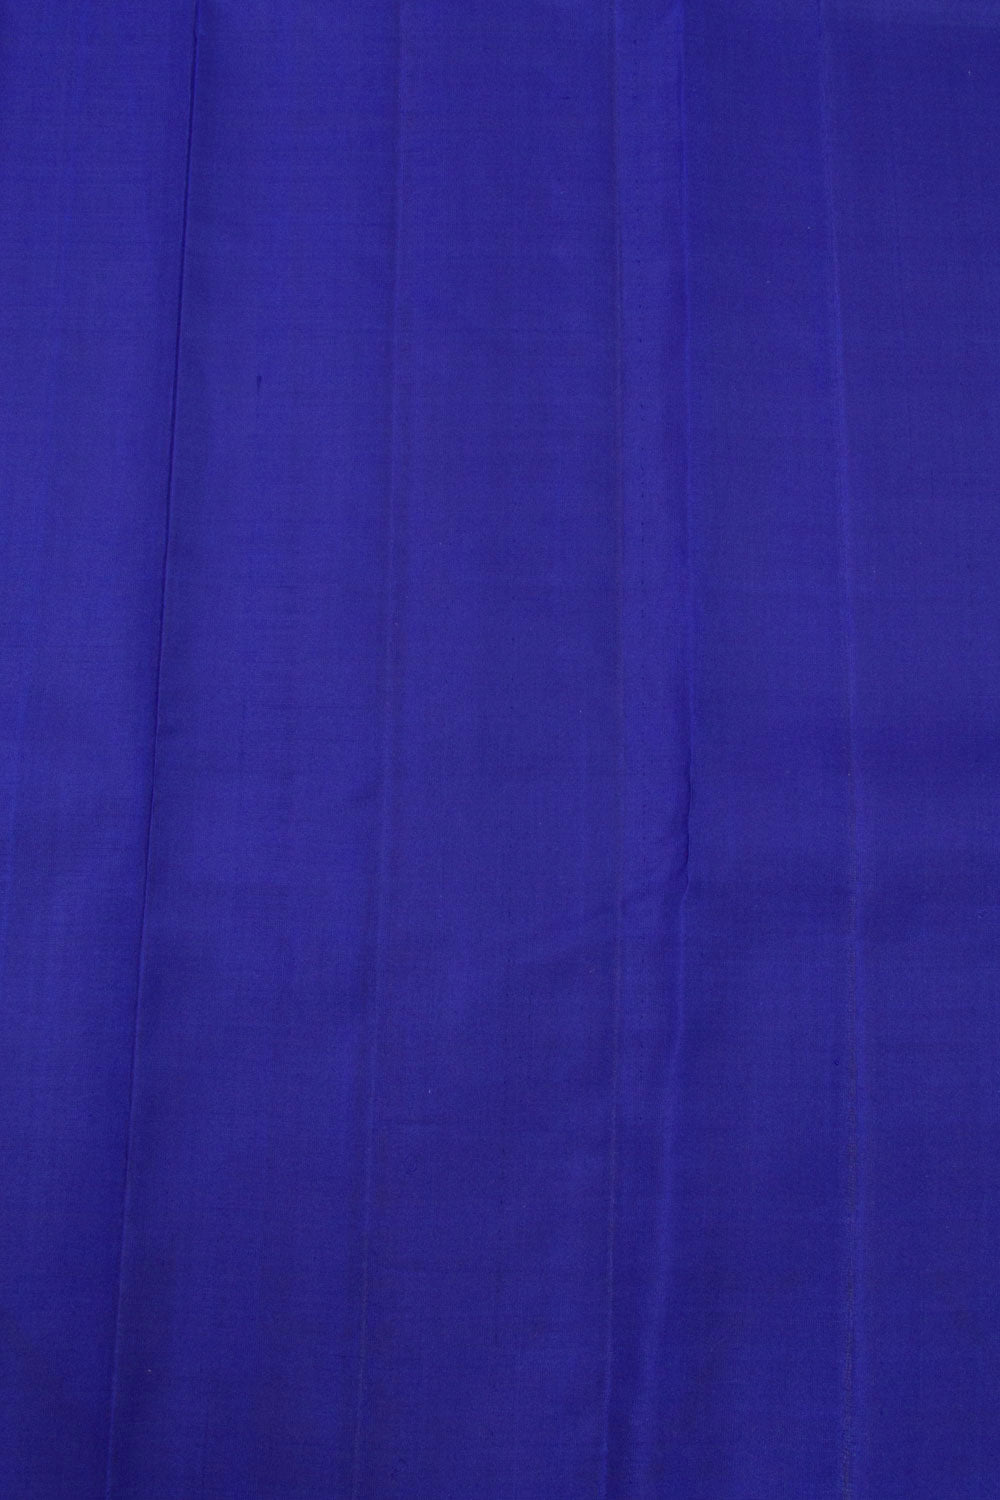 Royal Blue Handloom Kanjivaram Silk Saree 10069139